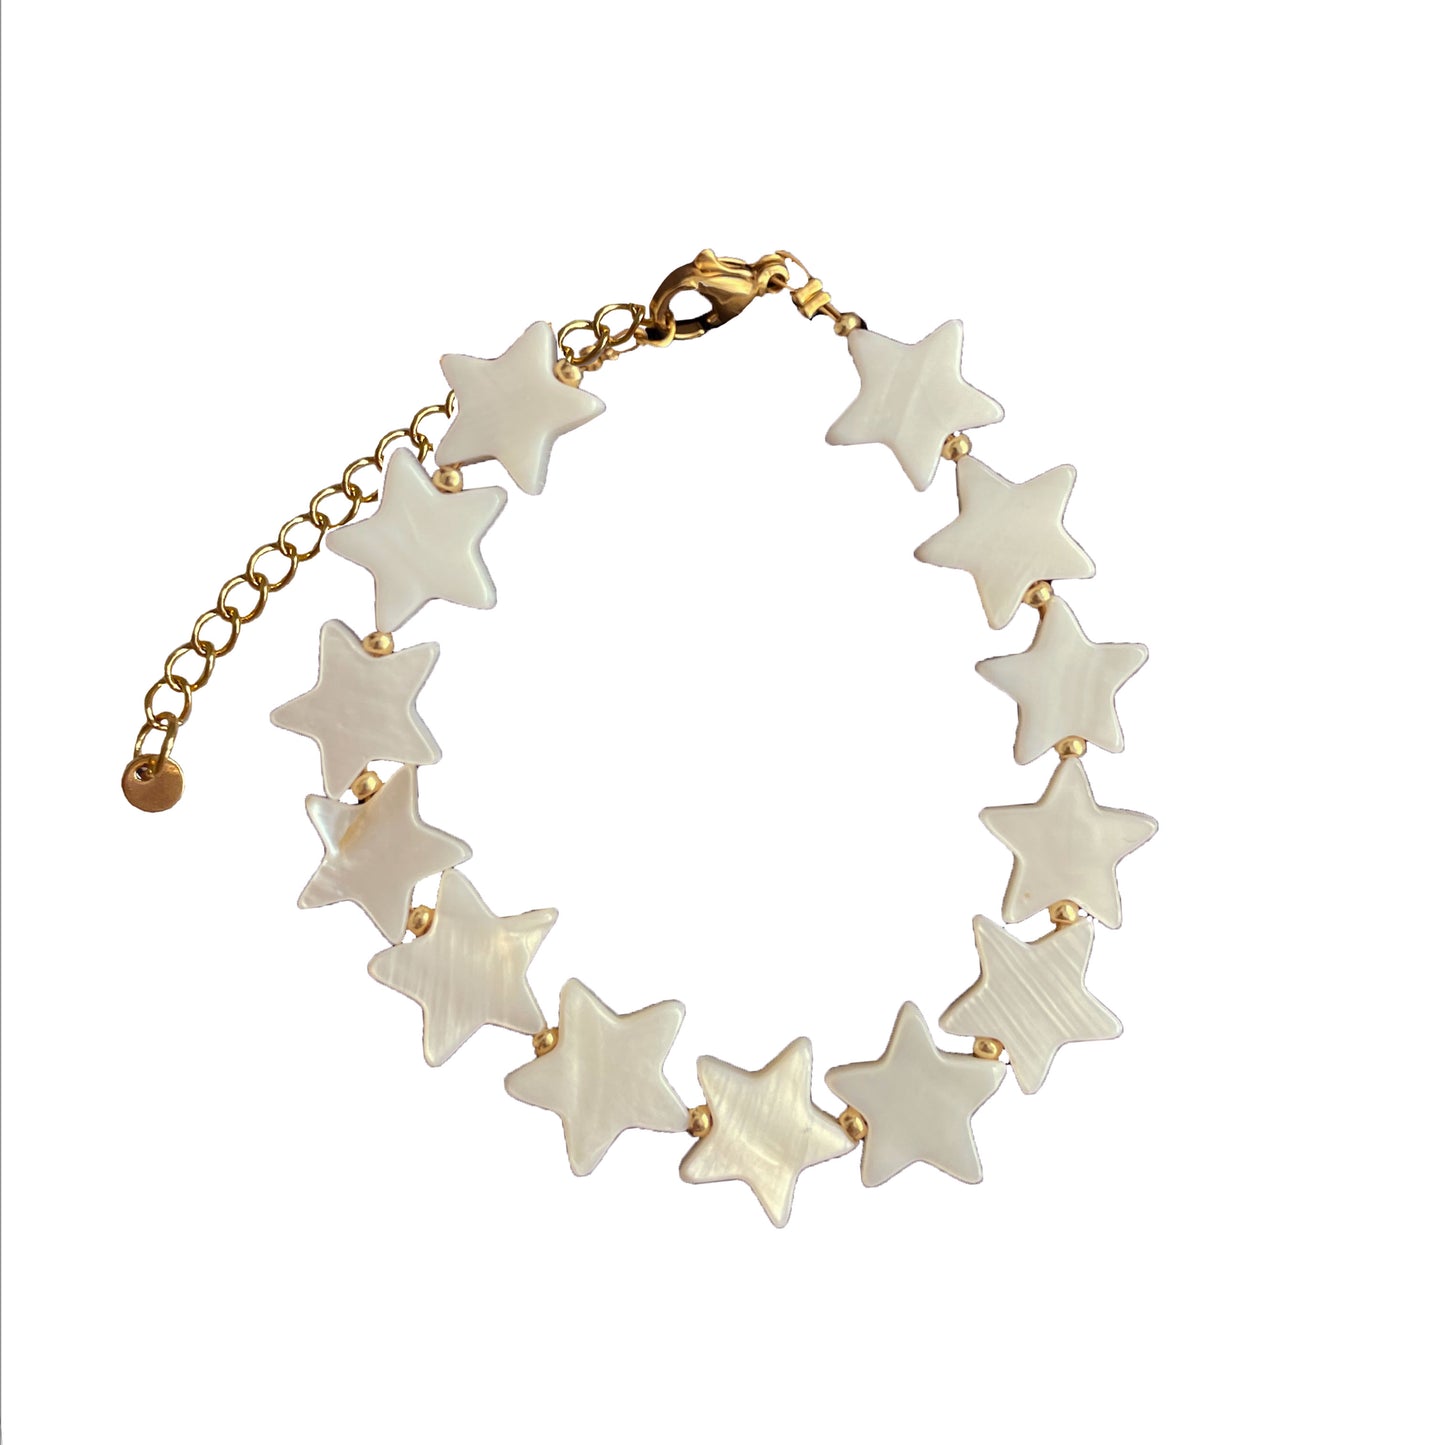 Starry Bracelet